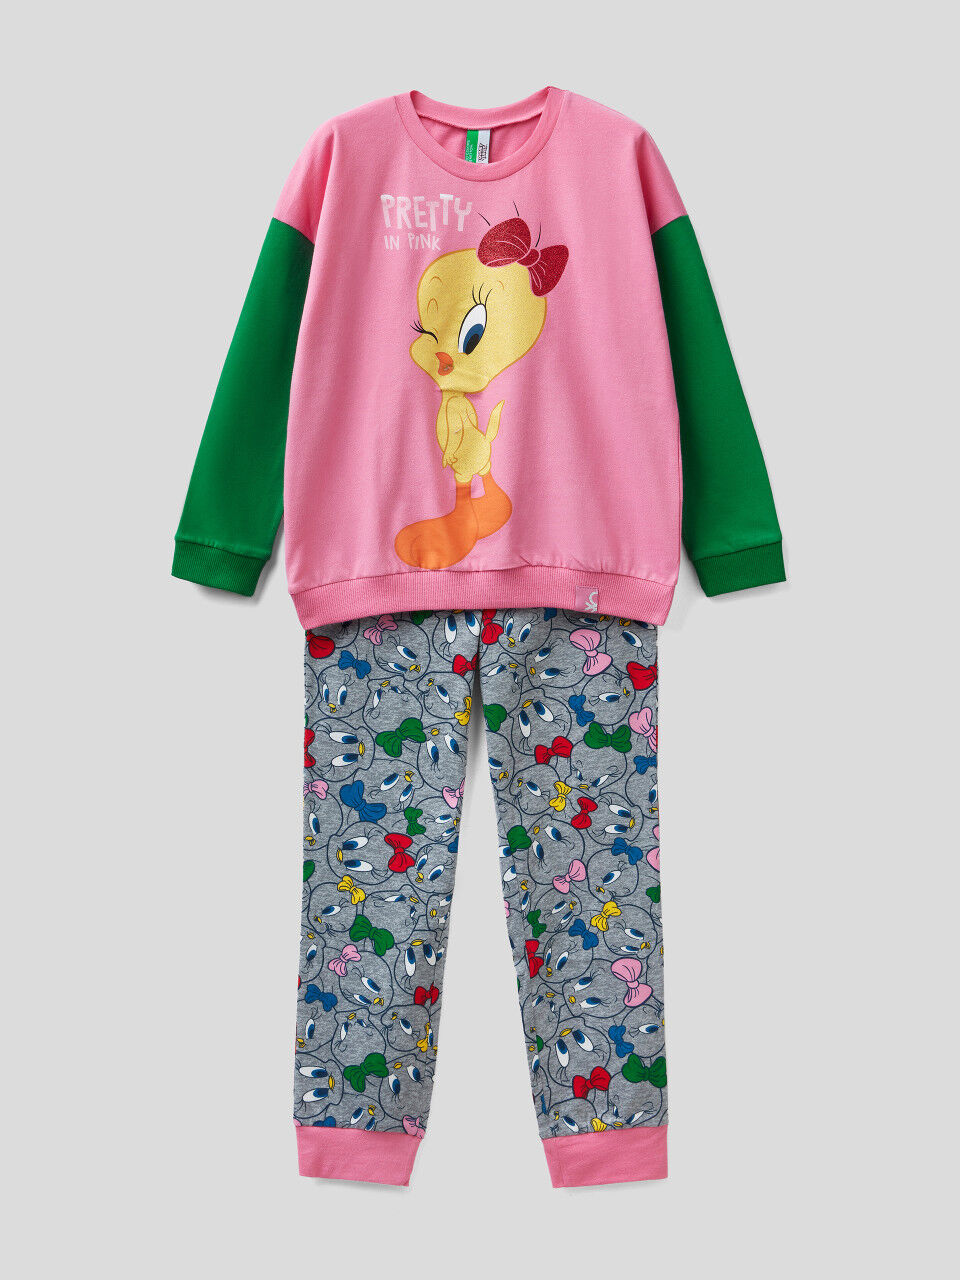 Warm Tweety pyjamas with glittery print